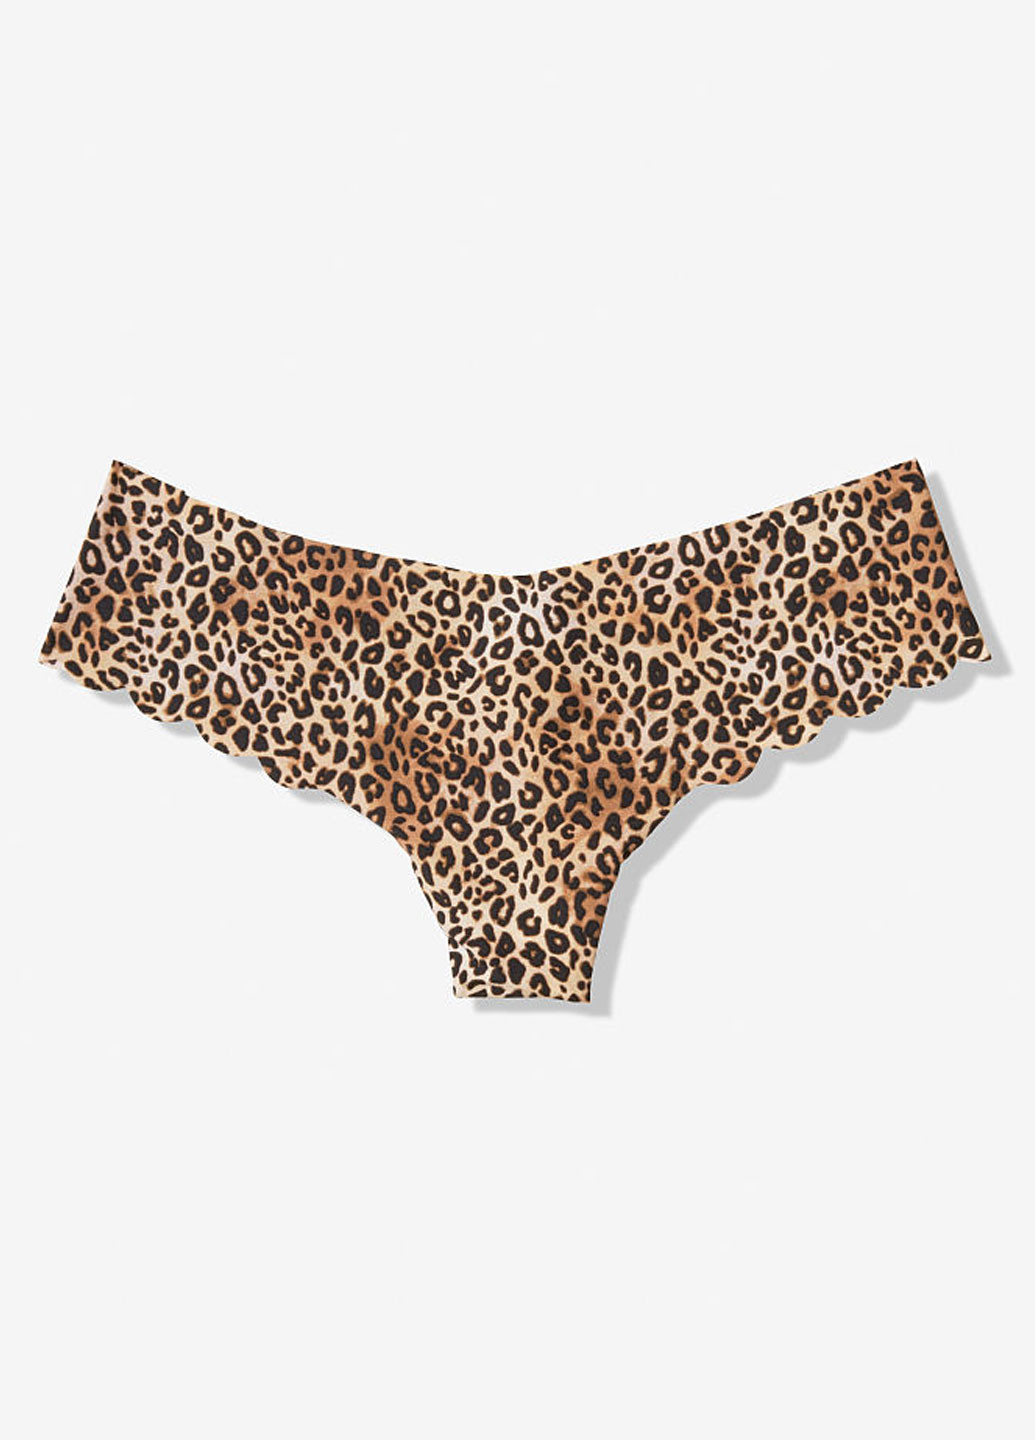 Трусики Victoria's Secret стринги леопардовые коричневые повседневные трикотаж